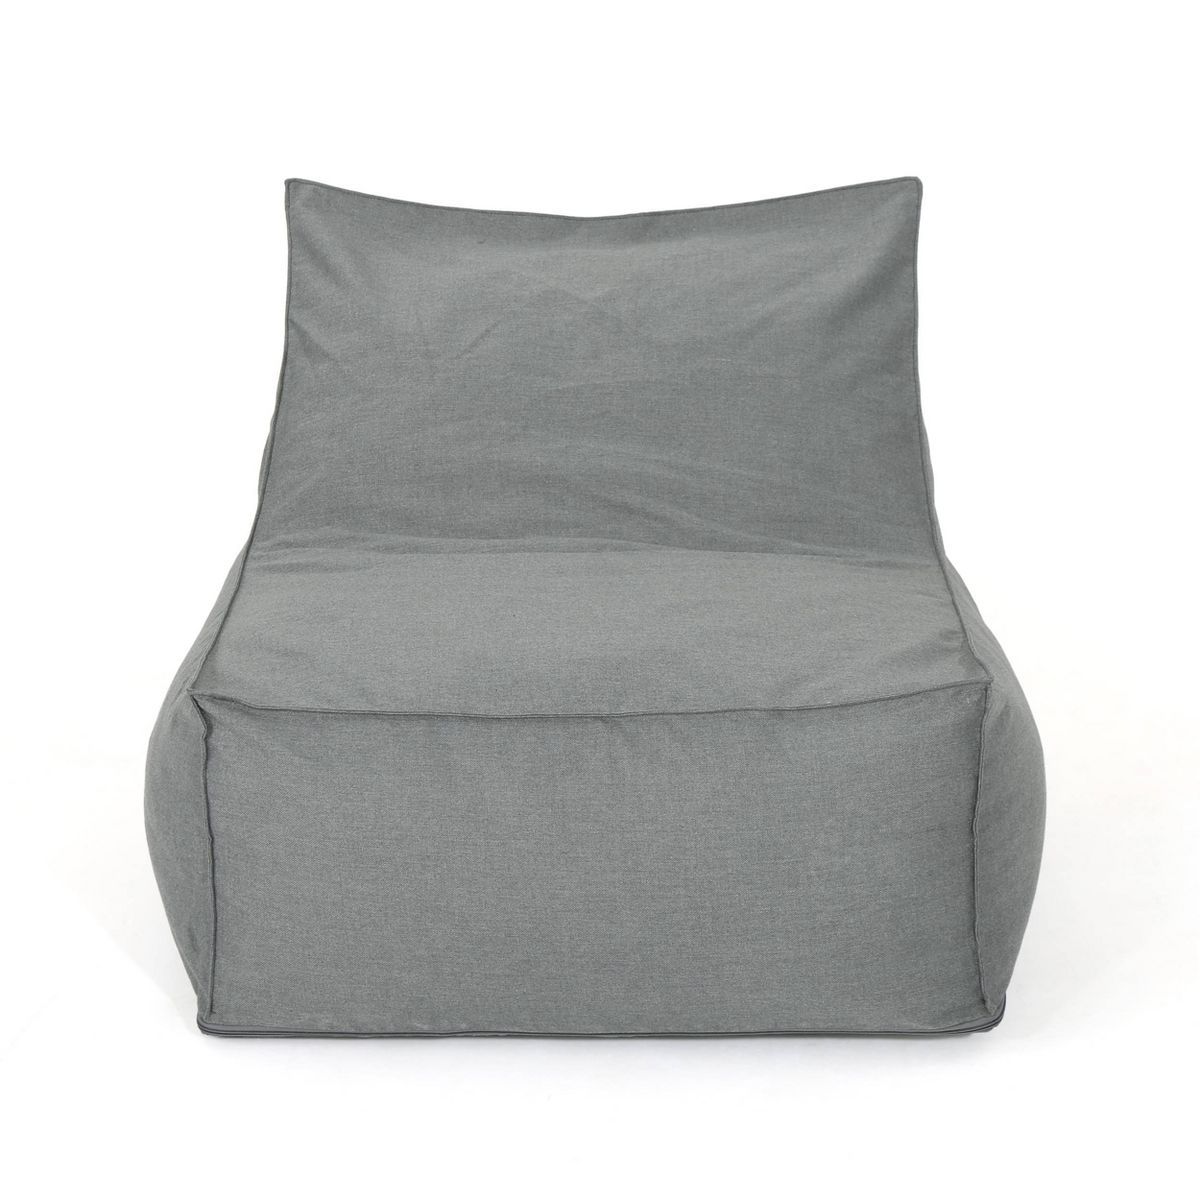 3' Henrietta Bean Bag Chair - Christopher Knight Home | Target